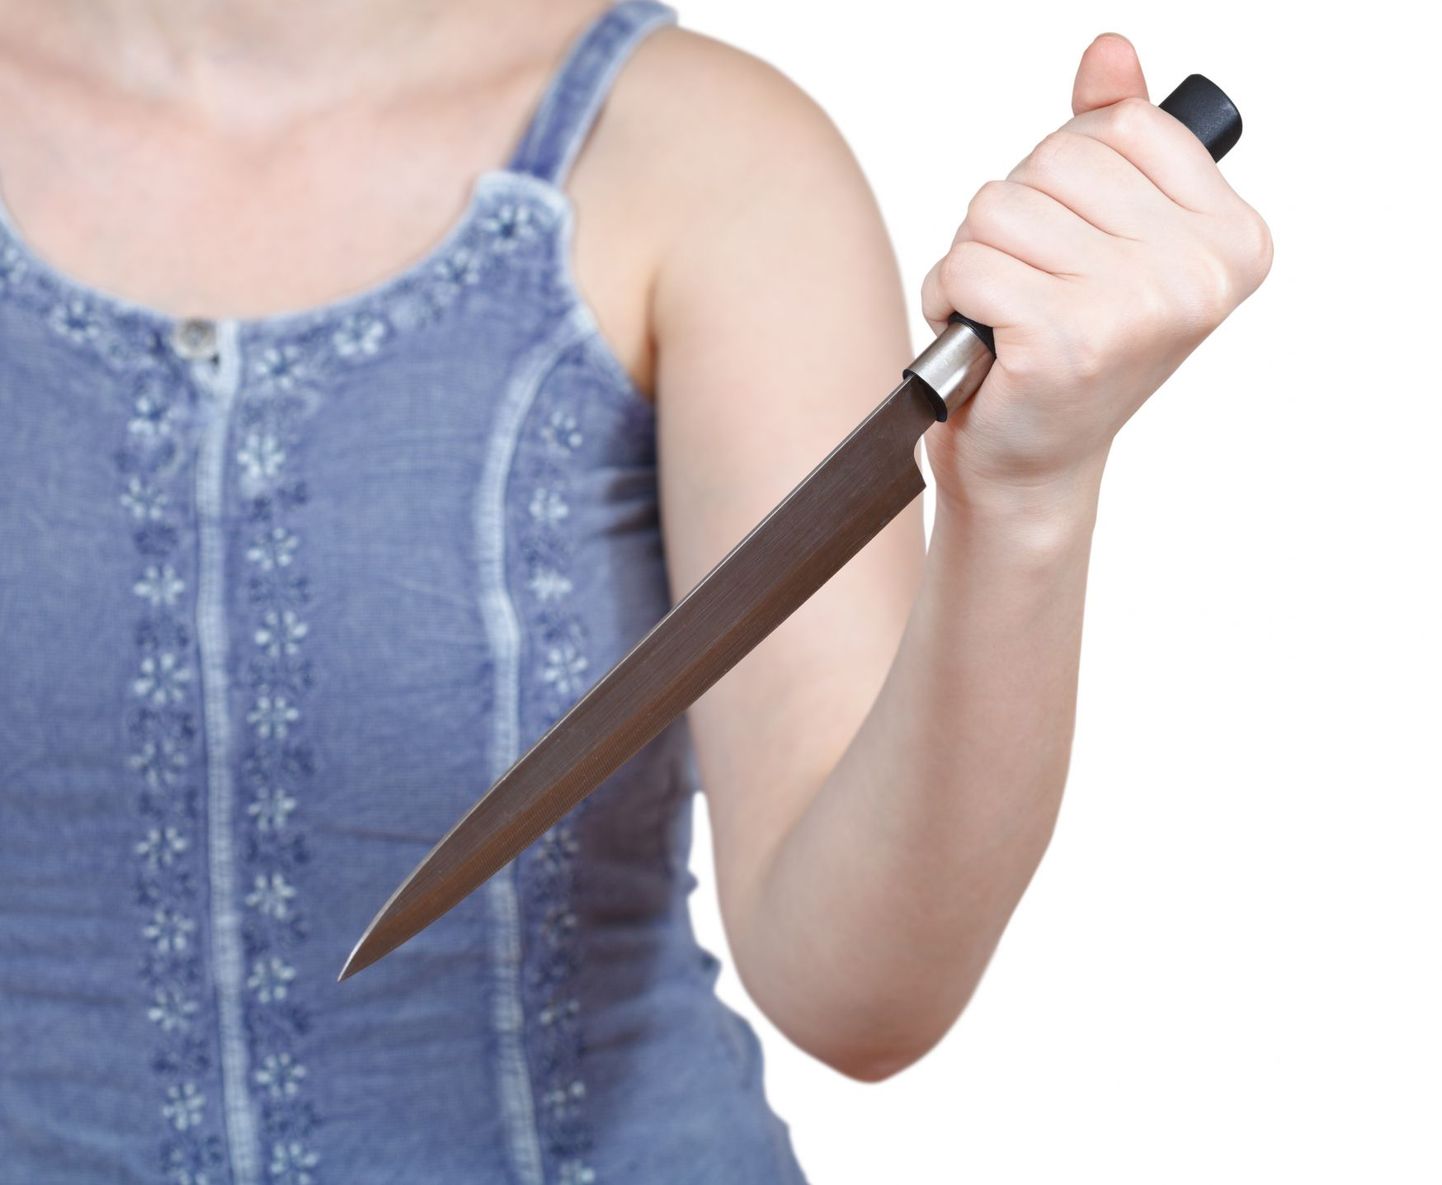 Женщина с ножом. Иллюстративный снимок.